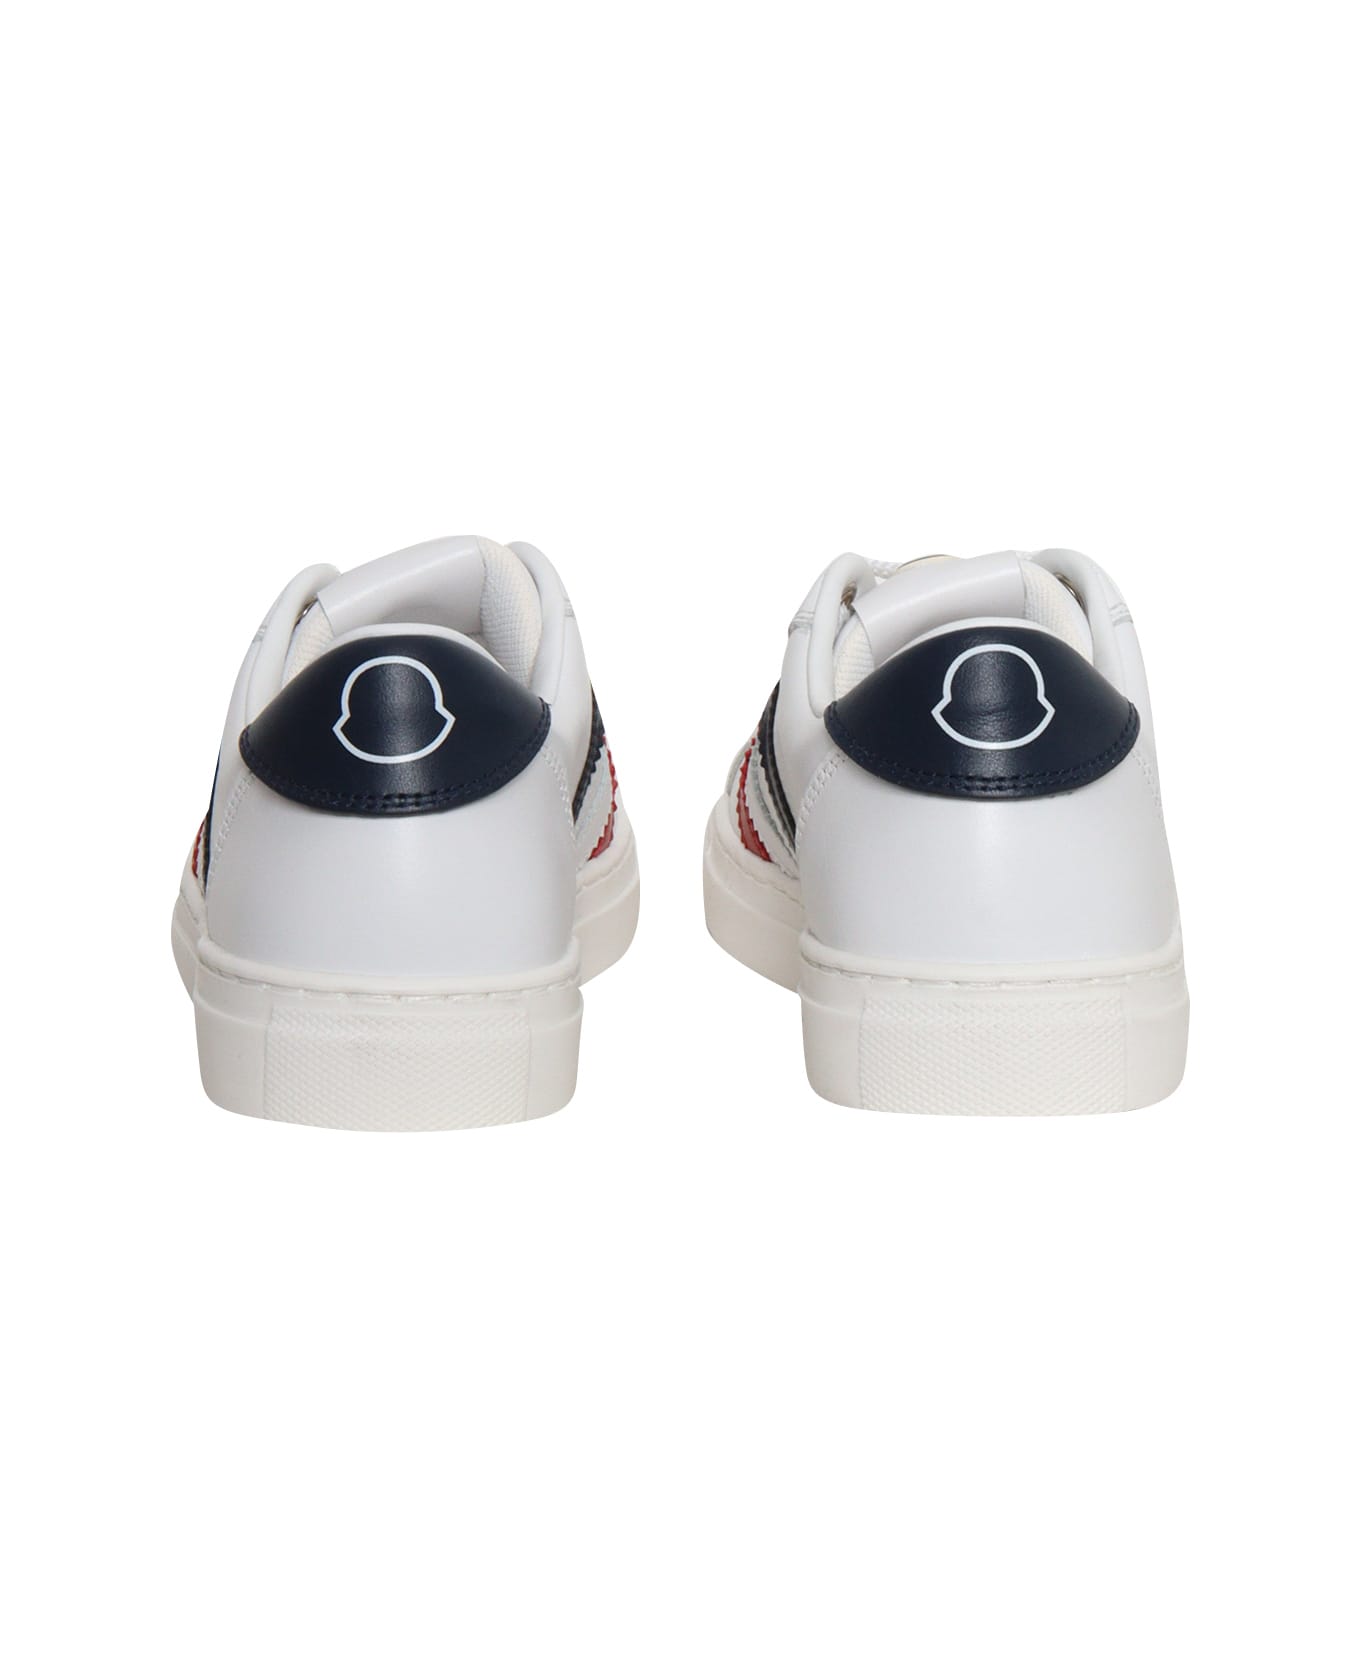 Moncler White Monaco Sneakers - WHITE